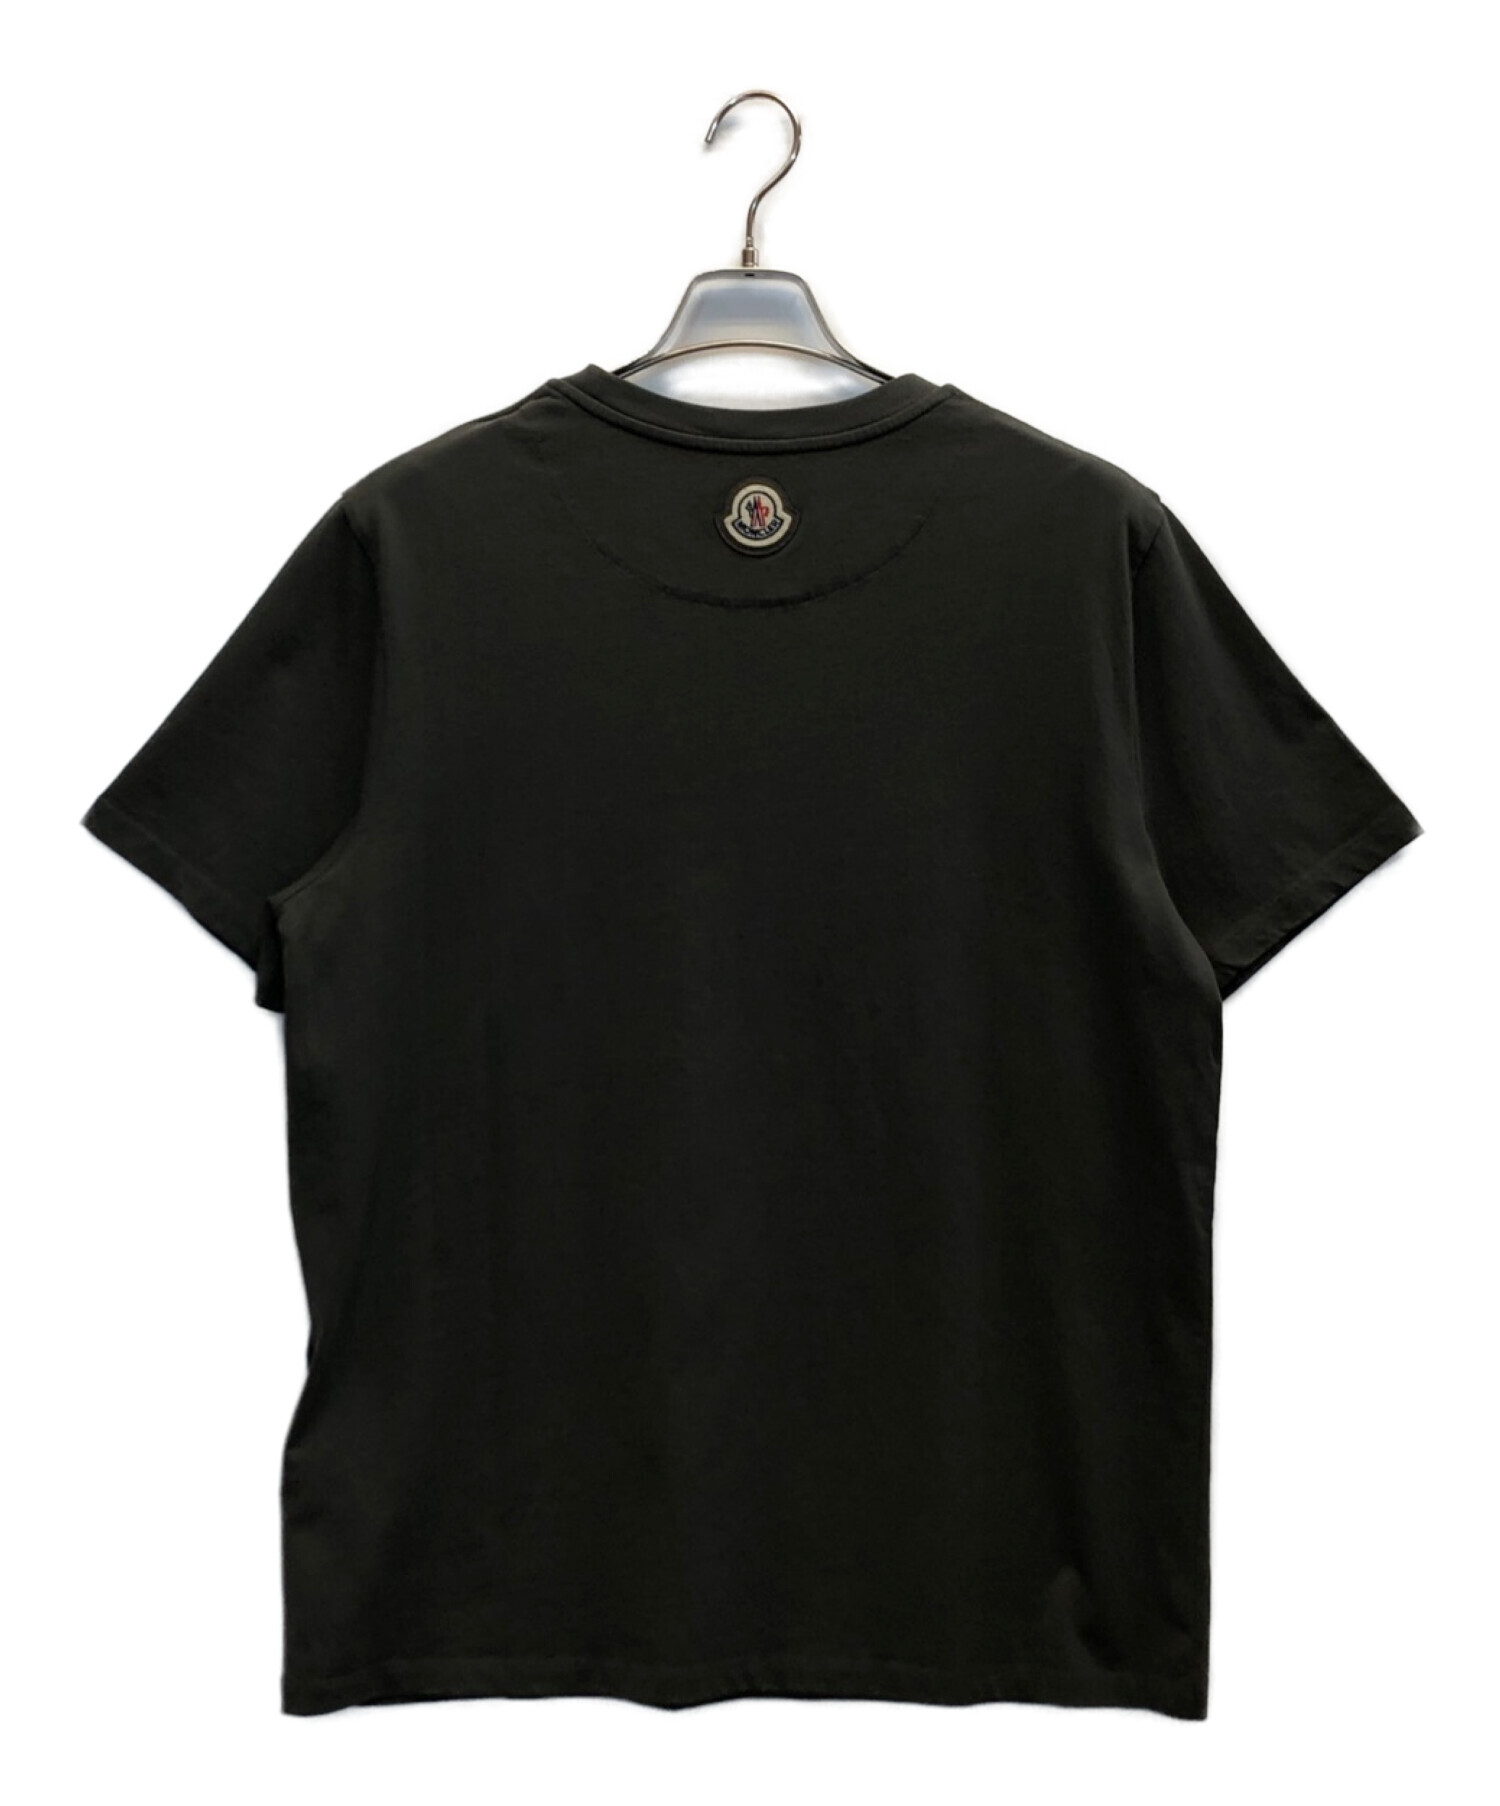 MONCLER (モンクレール) ダックモチーフロゴプリントTシャツ グレー サイズ:L